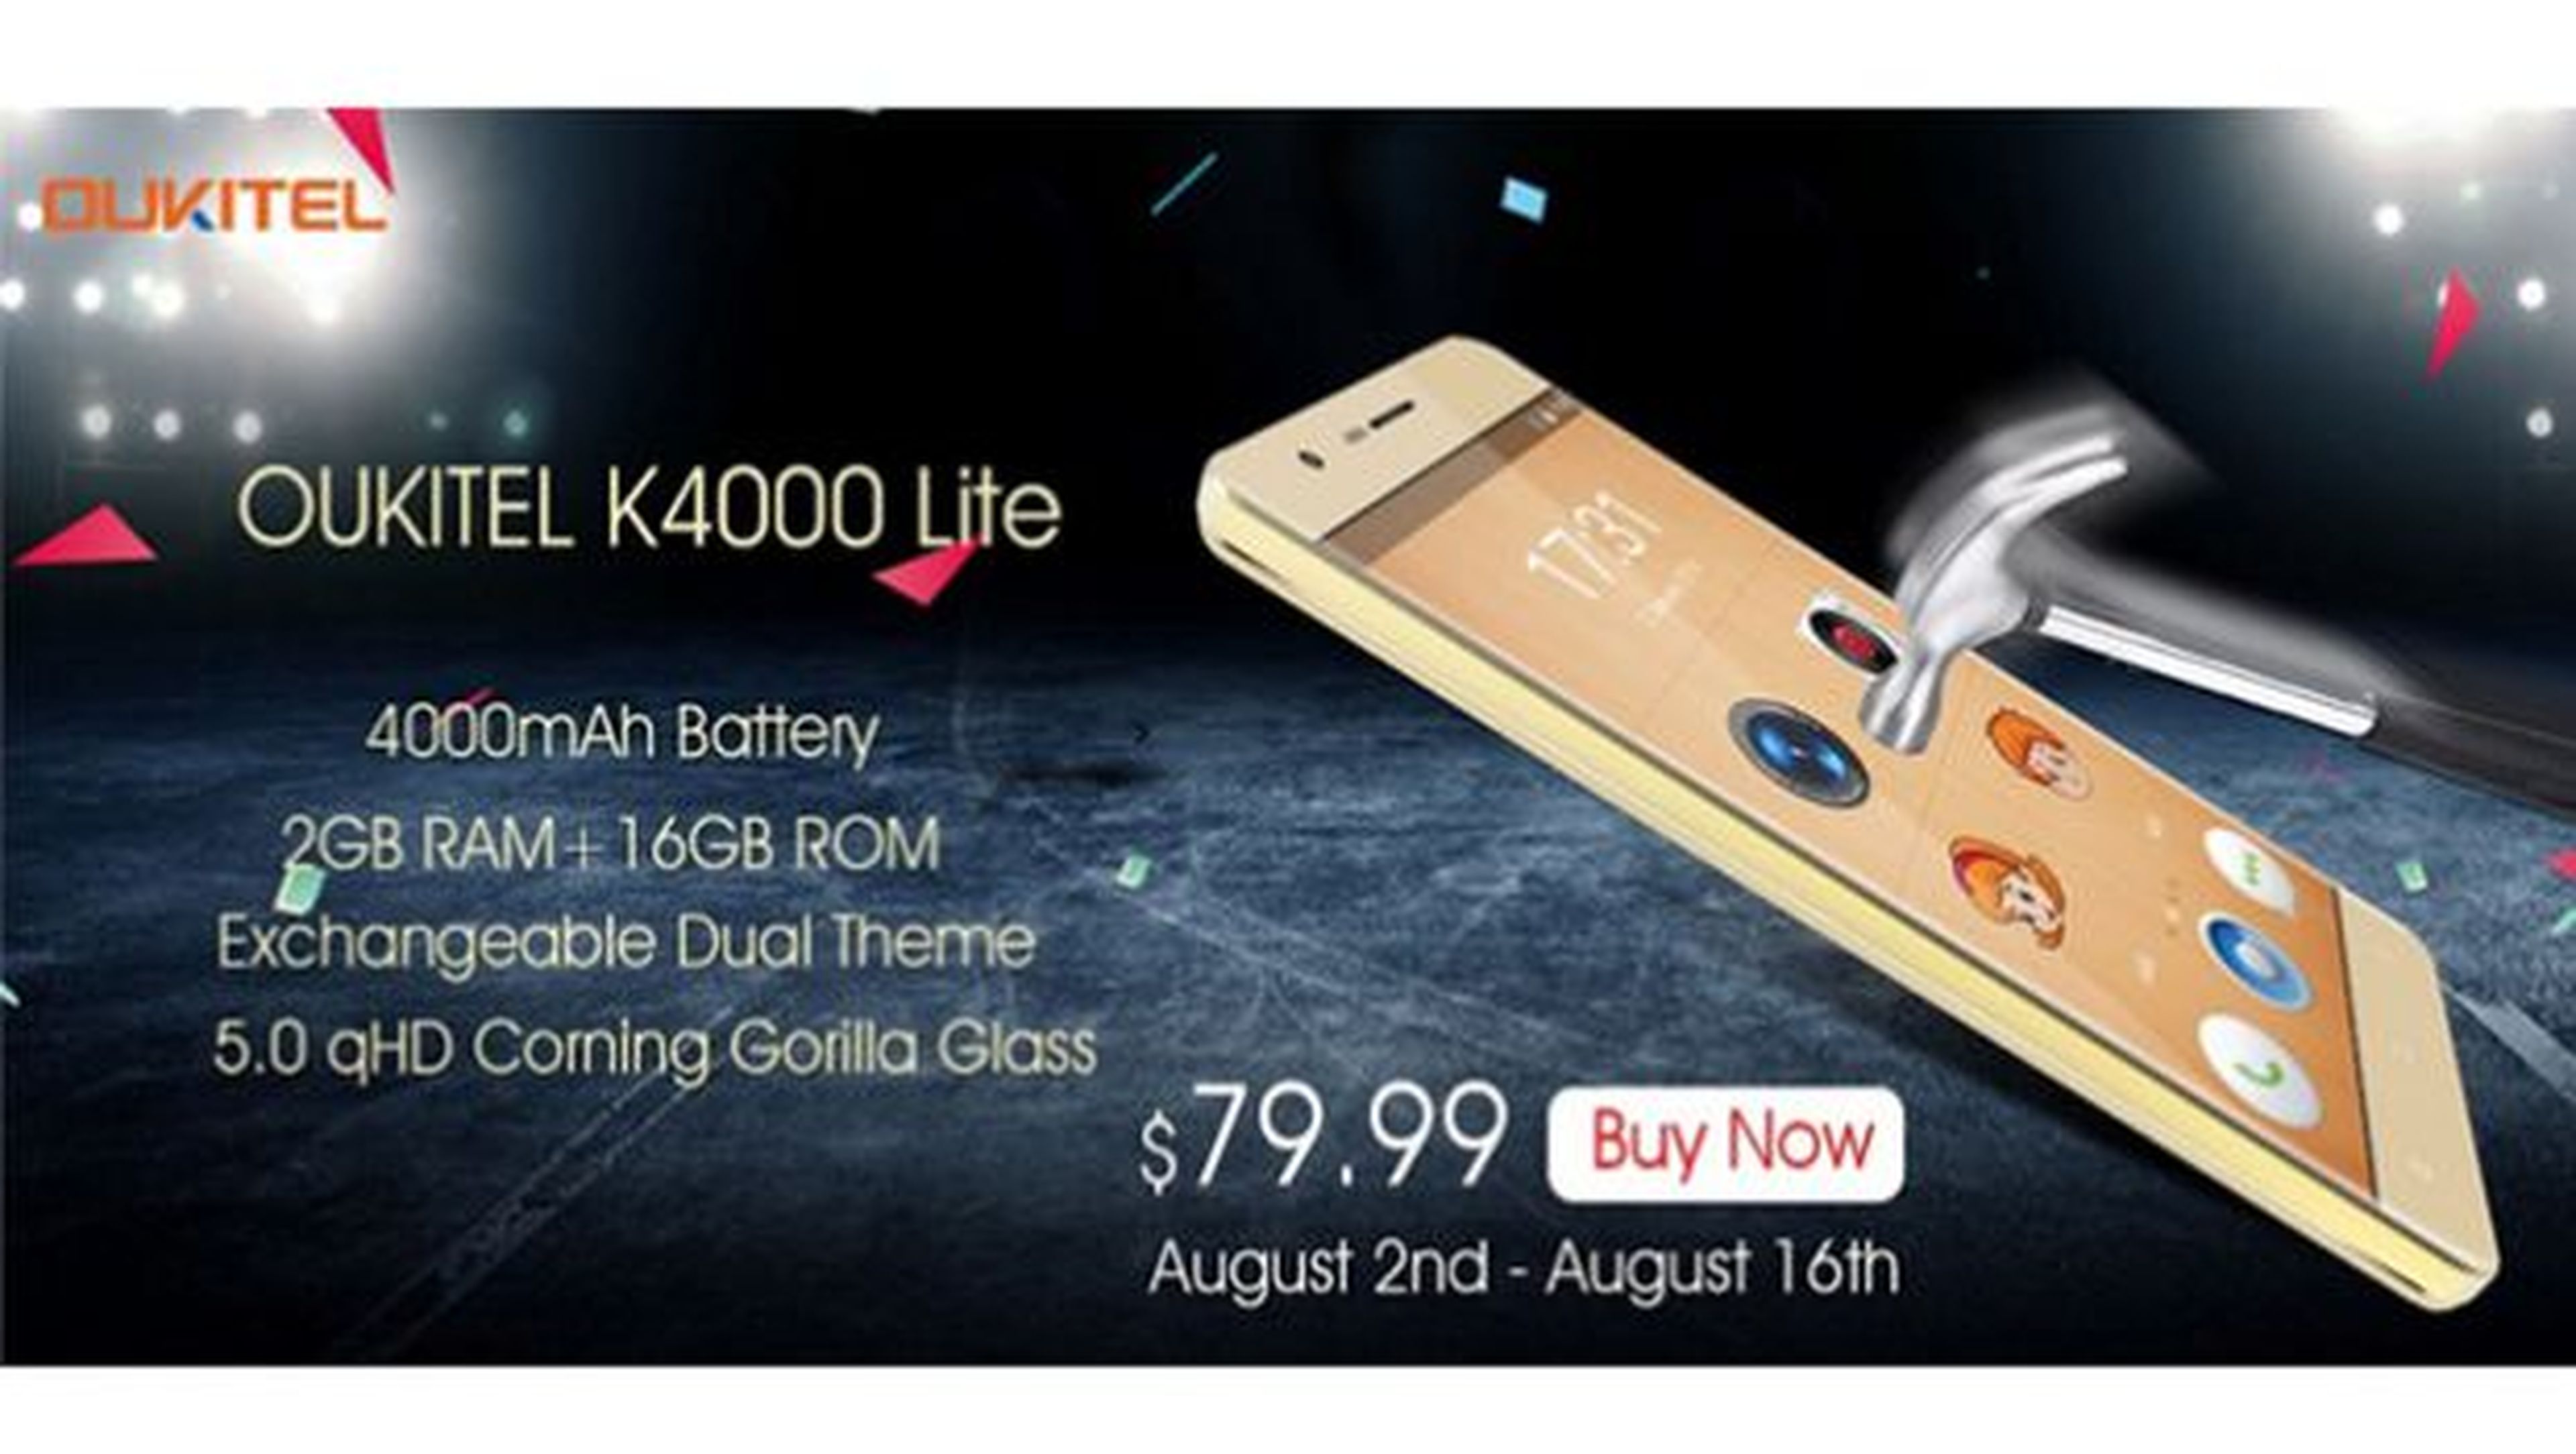 Un precio realmente ajustado para un smartphone con una excelente batería